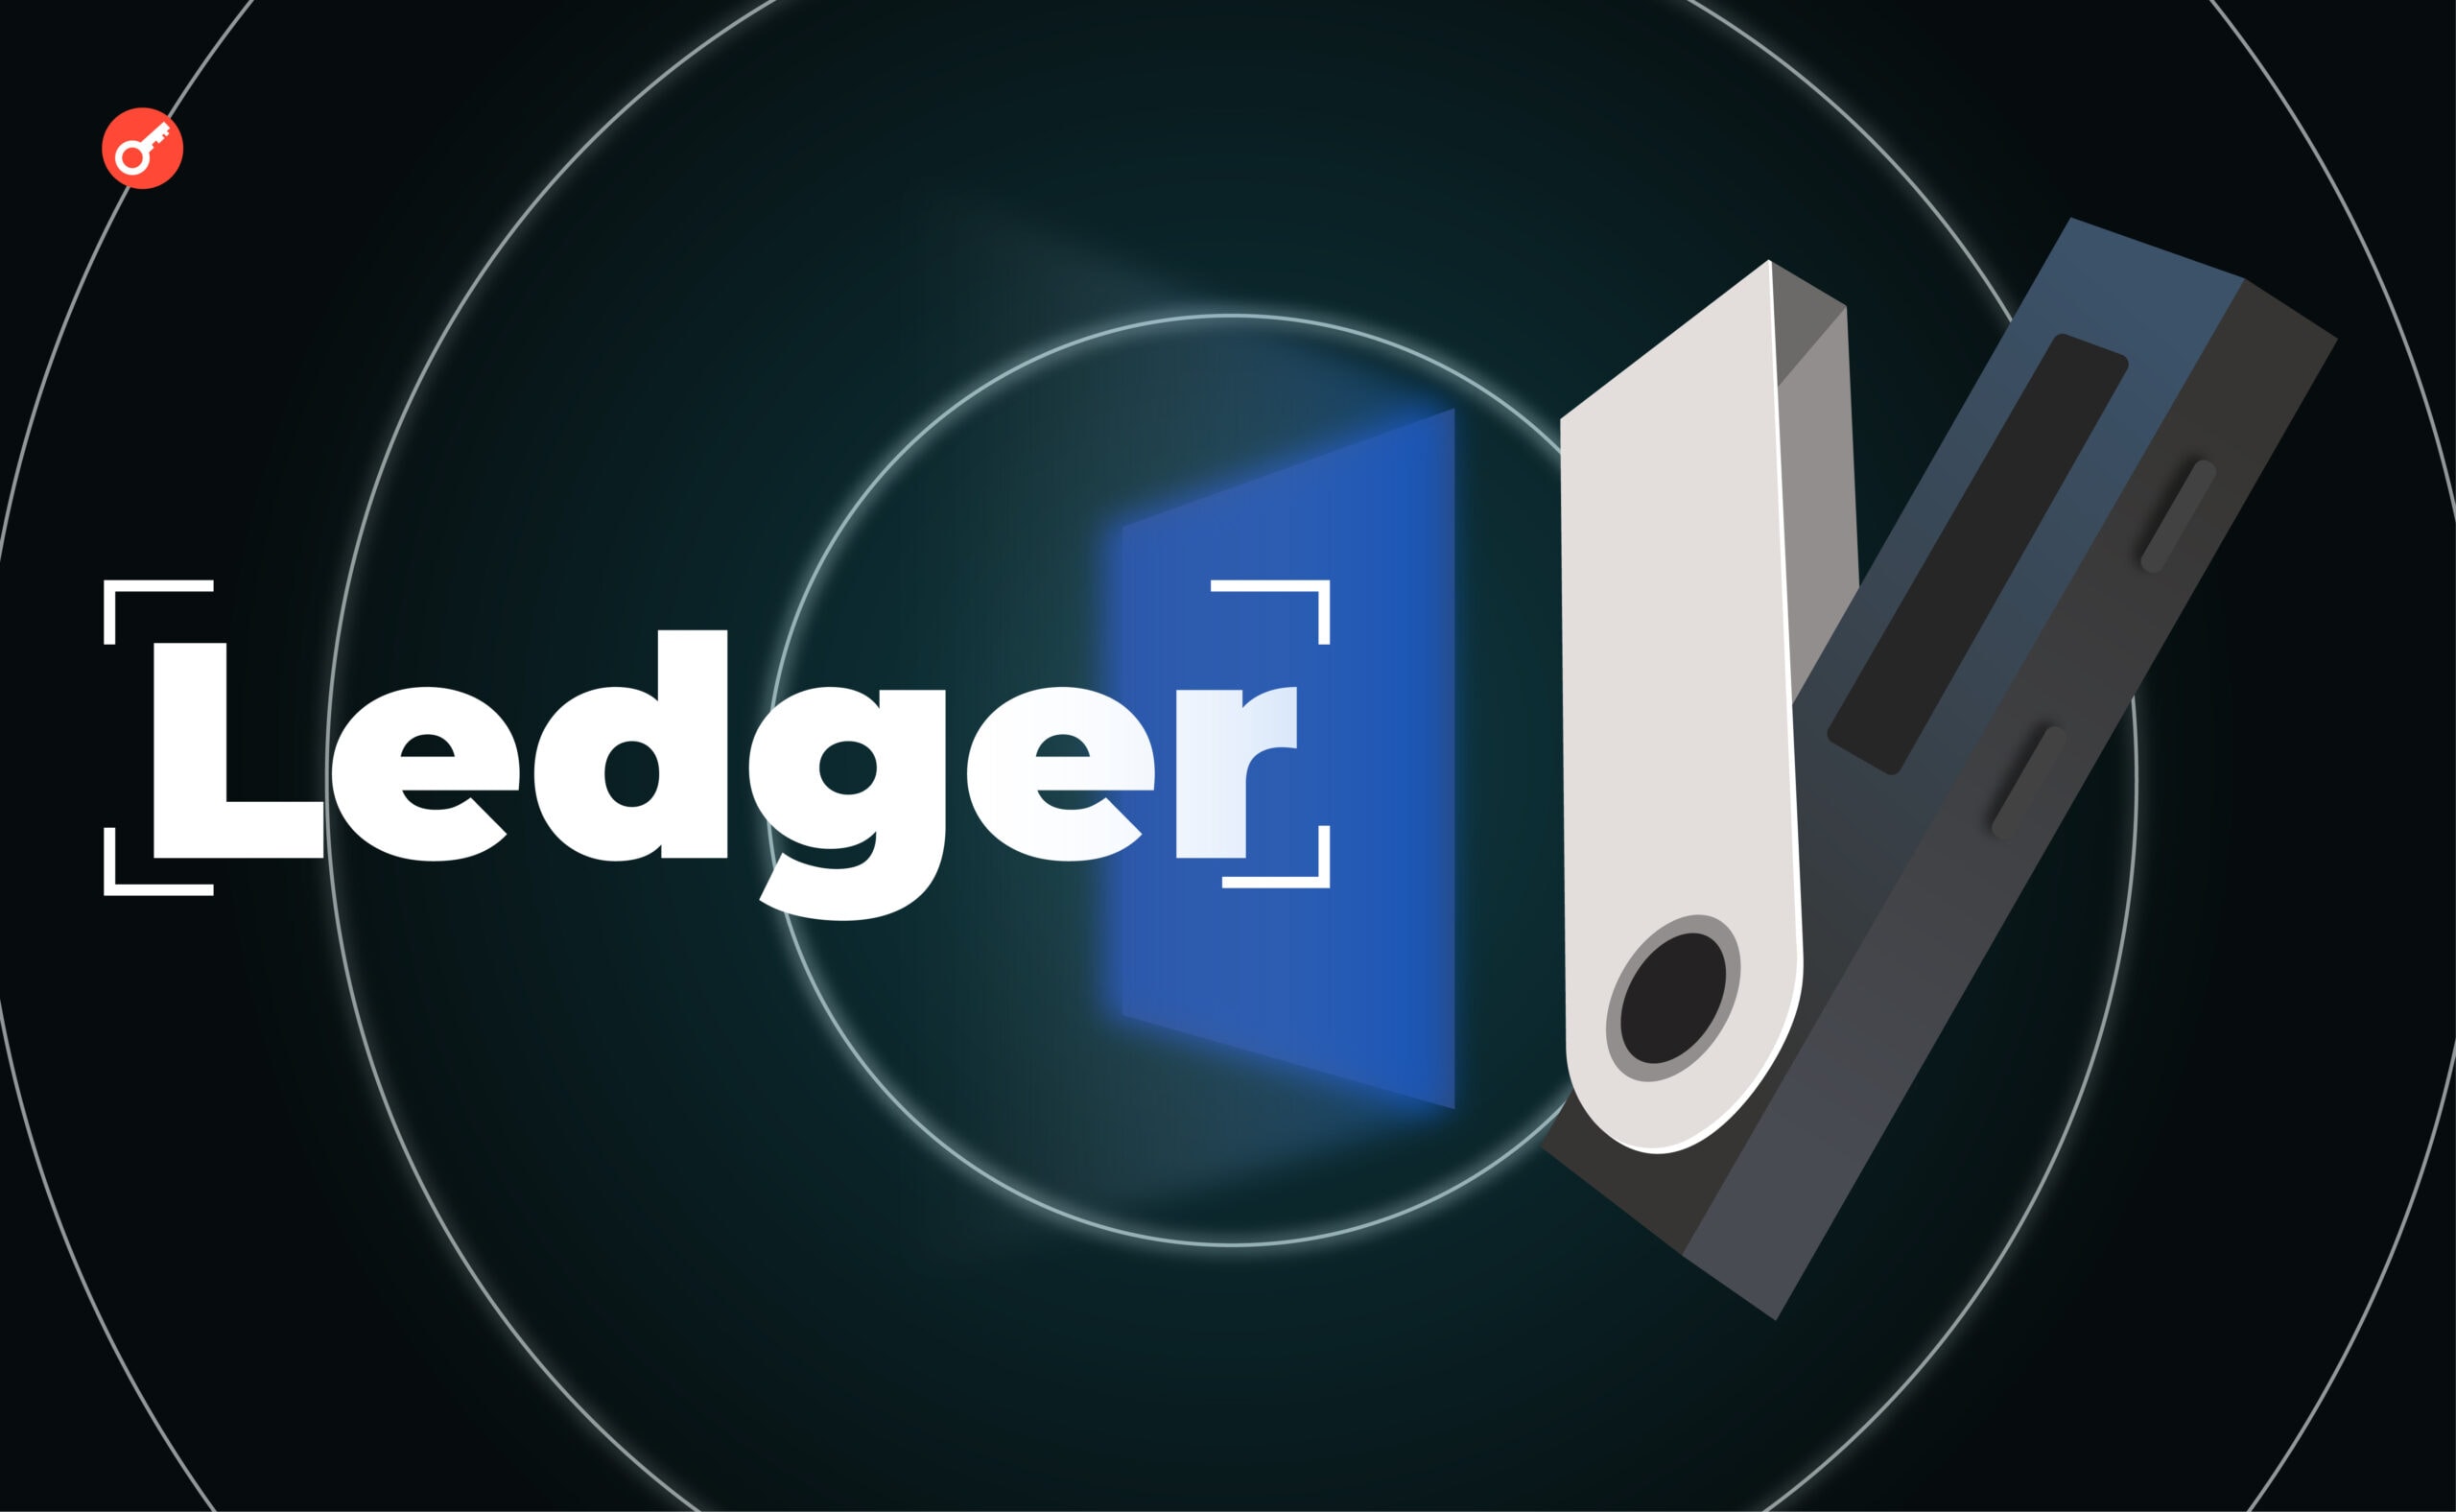 Экс-глава Ledger: «Власти могут спокойно получить seed-фразы клиентов». Заглавный коллаж новости.